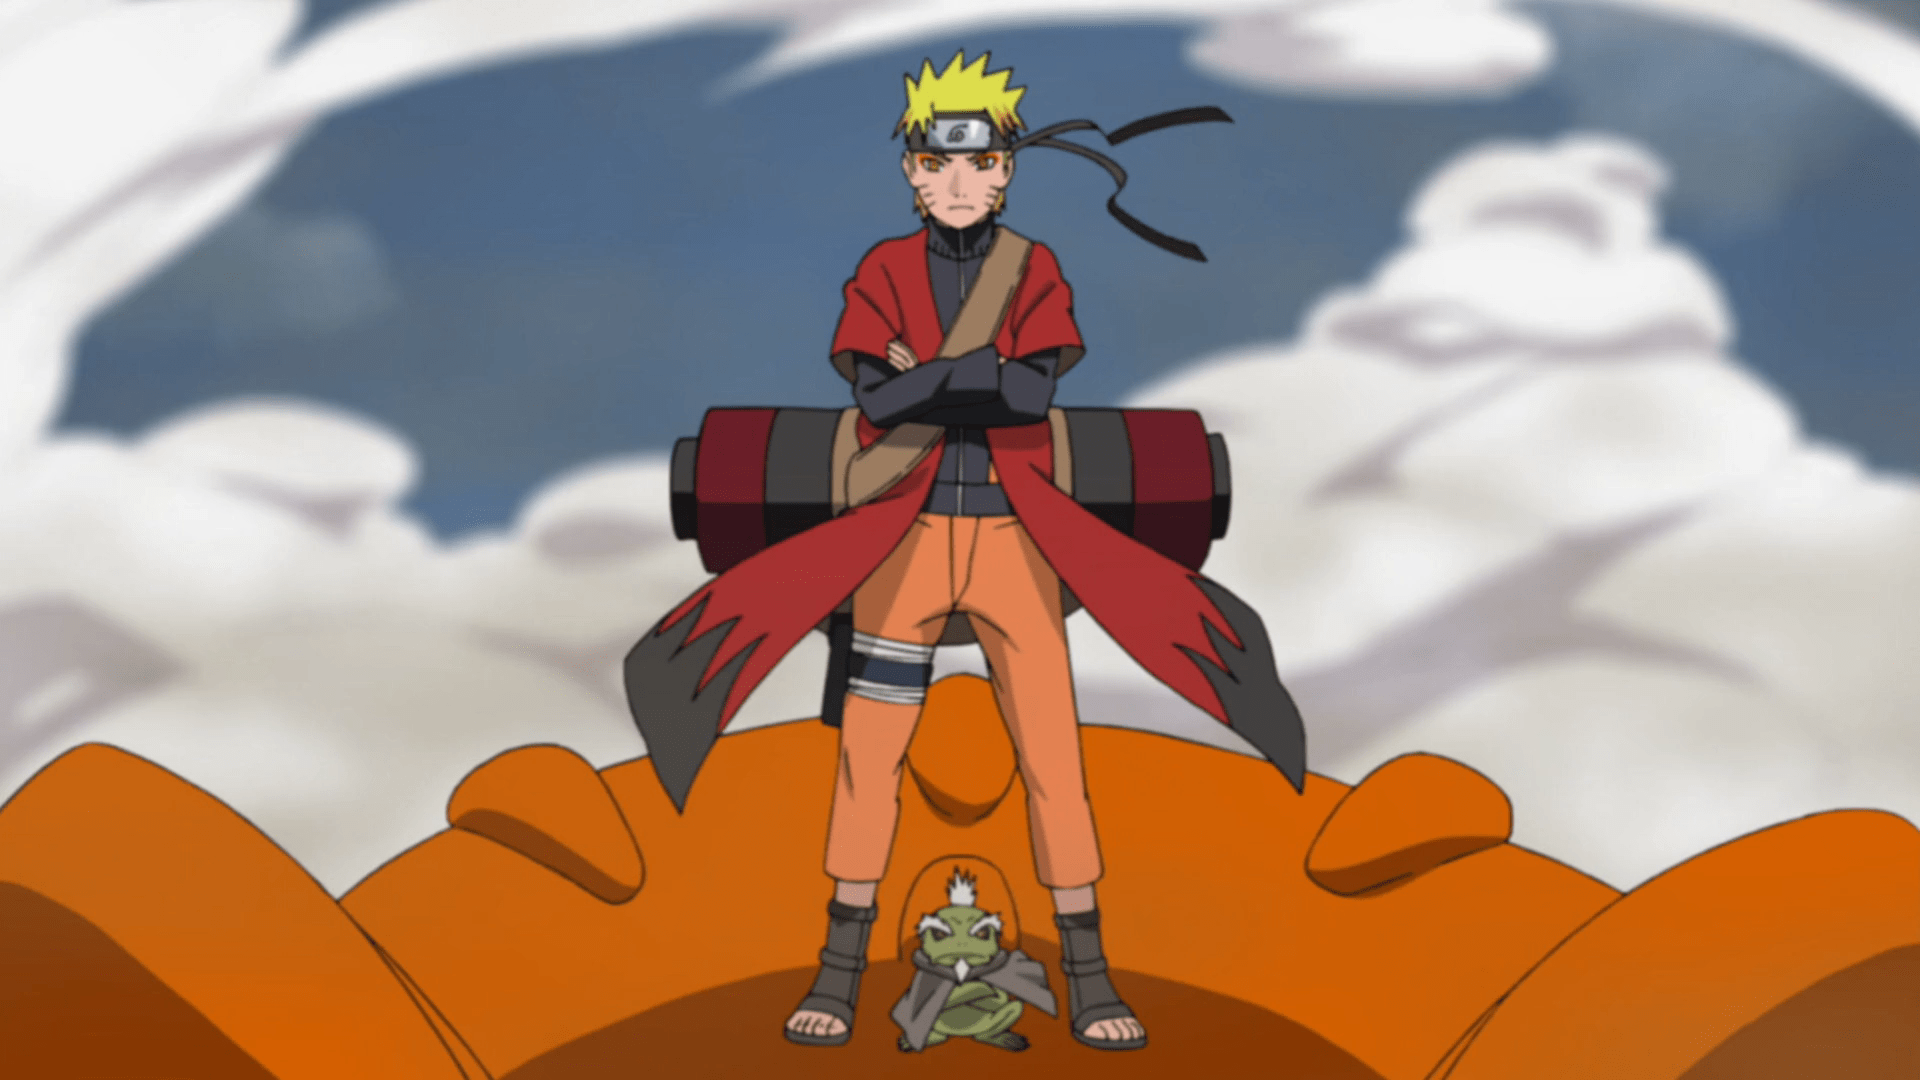 Naruto vs Pain